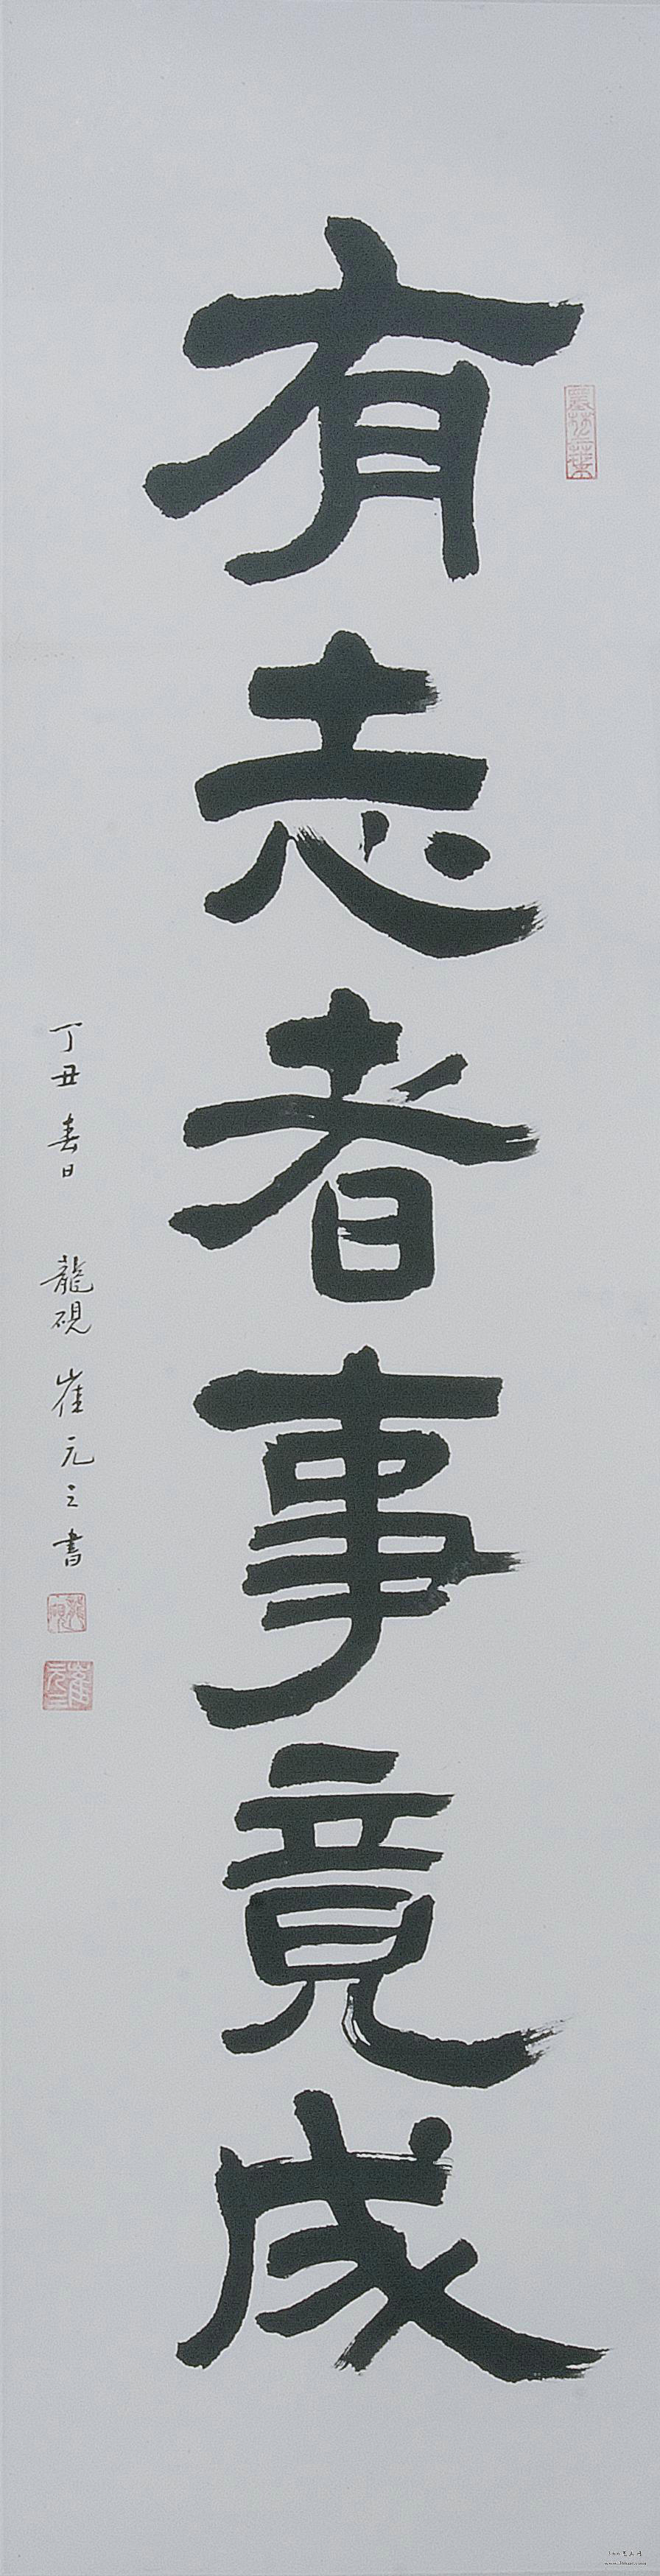 【朝鲜画】崔元三 书法 1997年 33.5 x 131cm